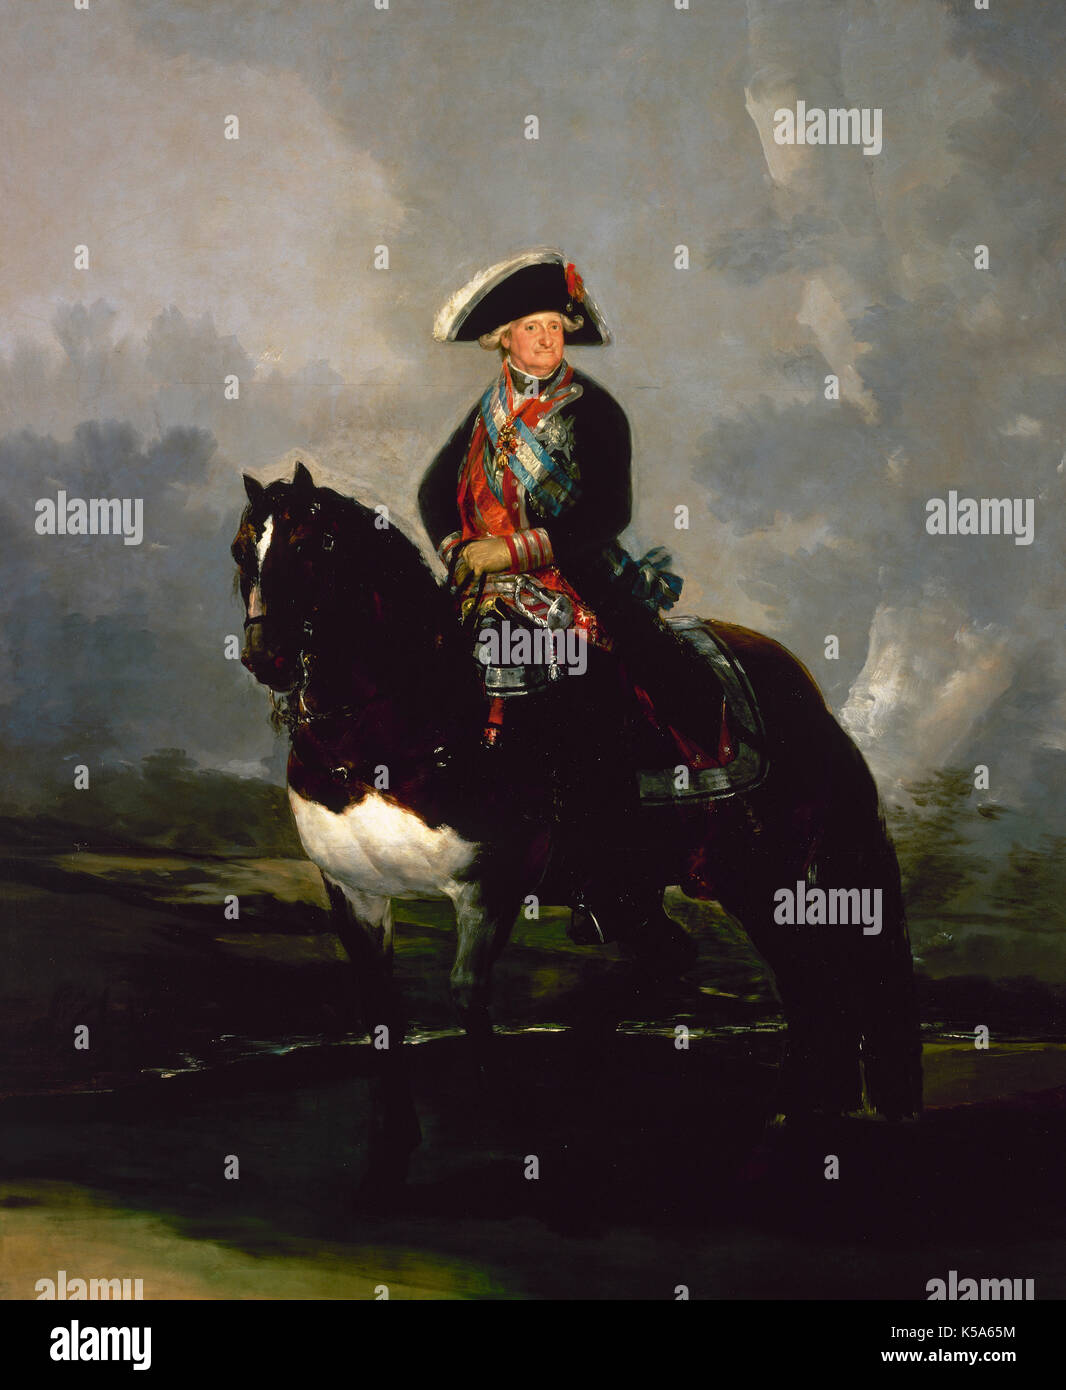 Charles IV (1748-1819). Roi d'Espagne (1788-1808). Charles IV à cheval, 1800. Peinture de Francisco de Goya. Musée du Prado, Madrid, Espagne. Banque D'Images